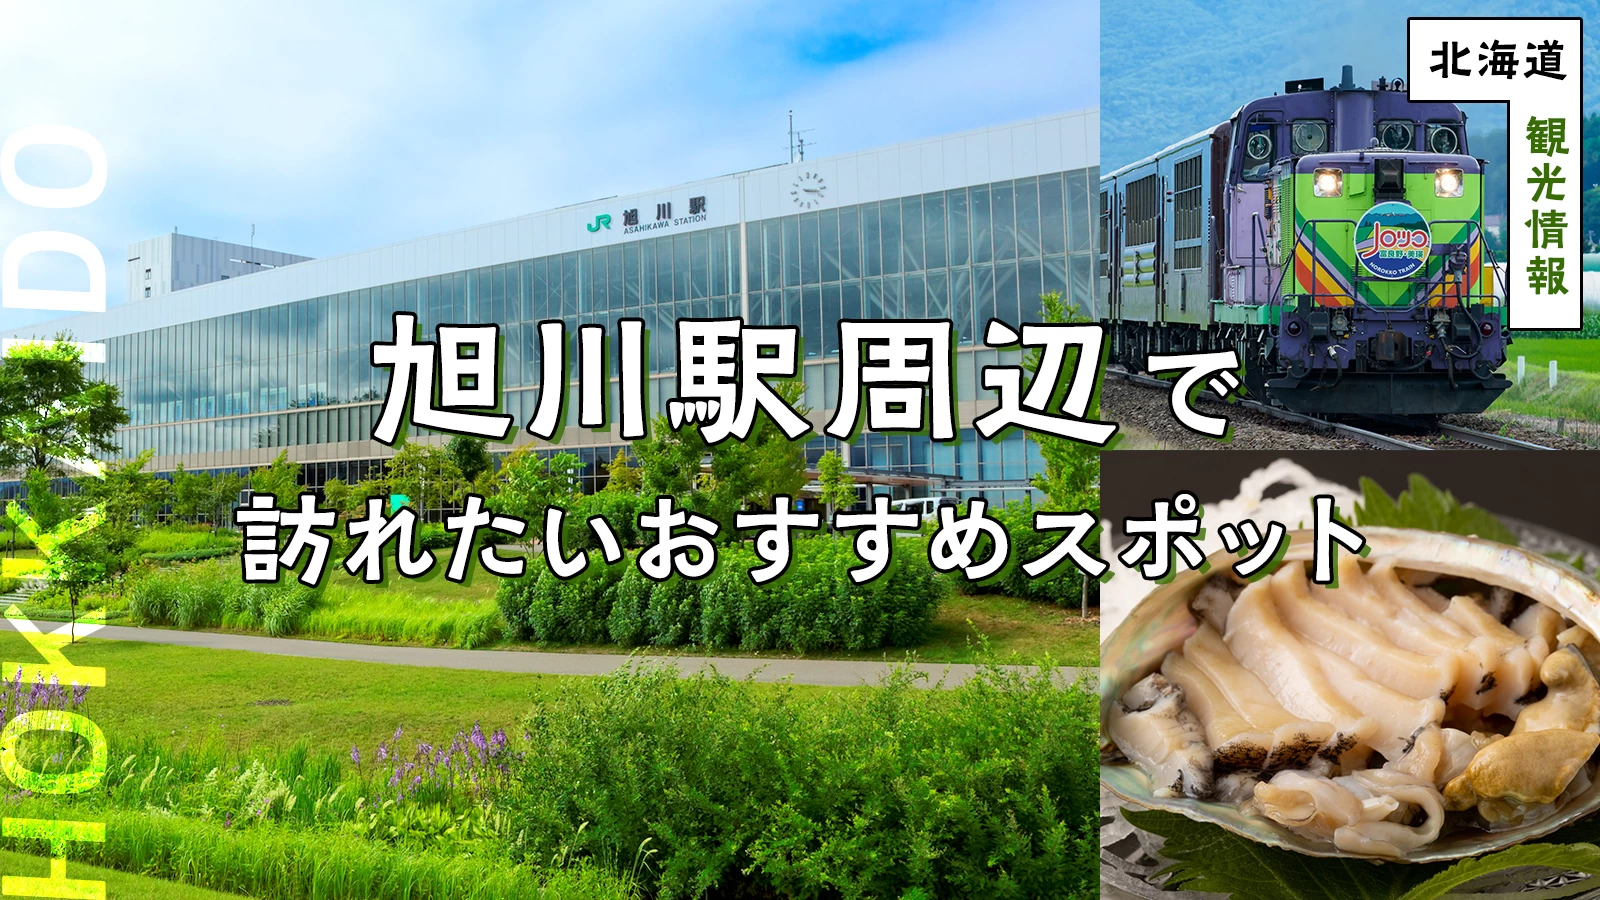 【北海道・観光情報】旭川駅周辺で訪れたいおすすめスポット12選